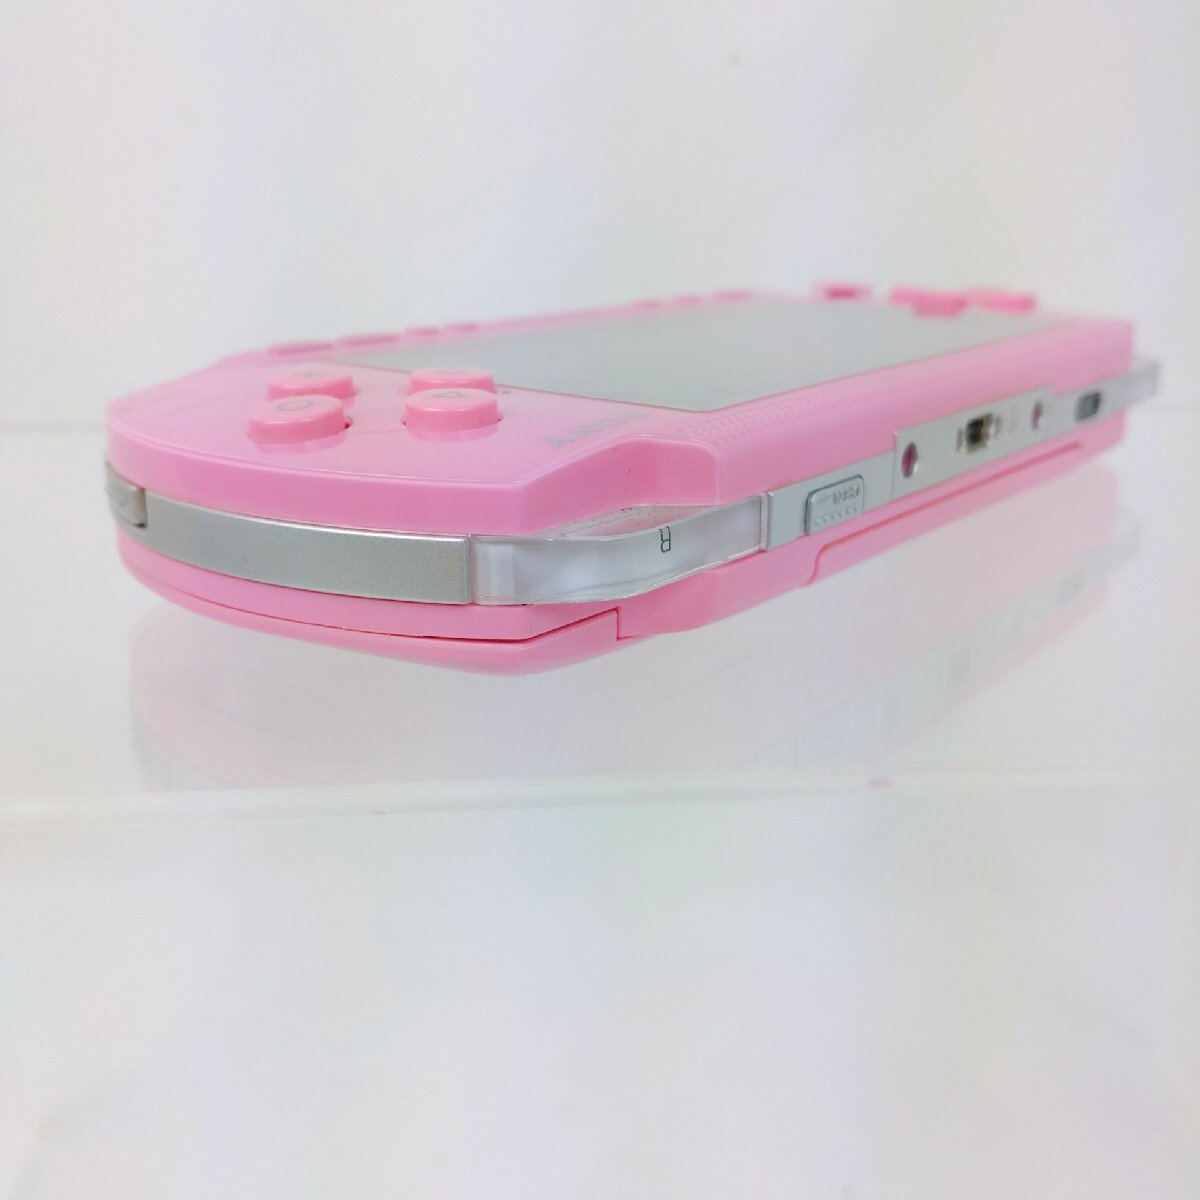 SONY PSP 1000 серии электризация подтверждено розовый с коробкой PlayStationPortable